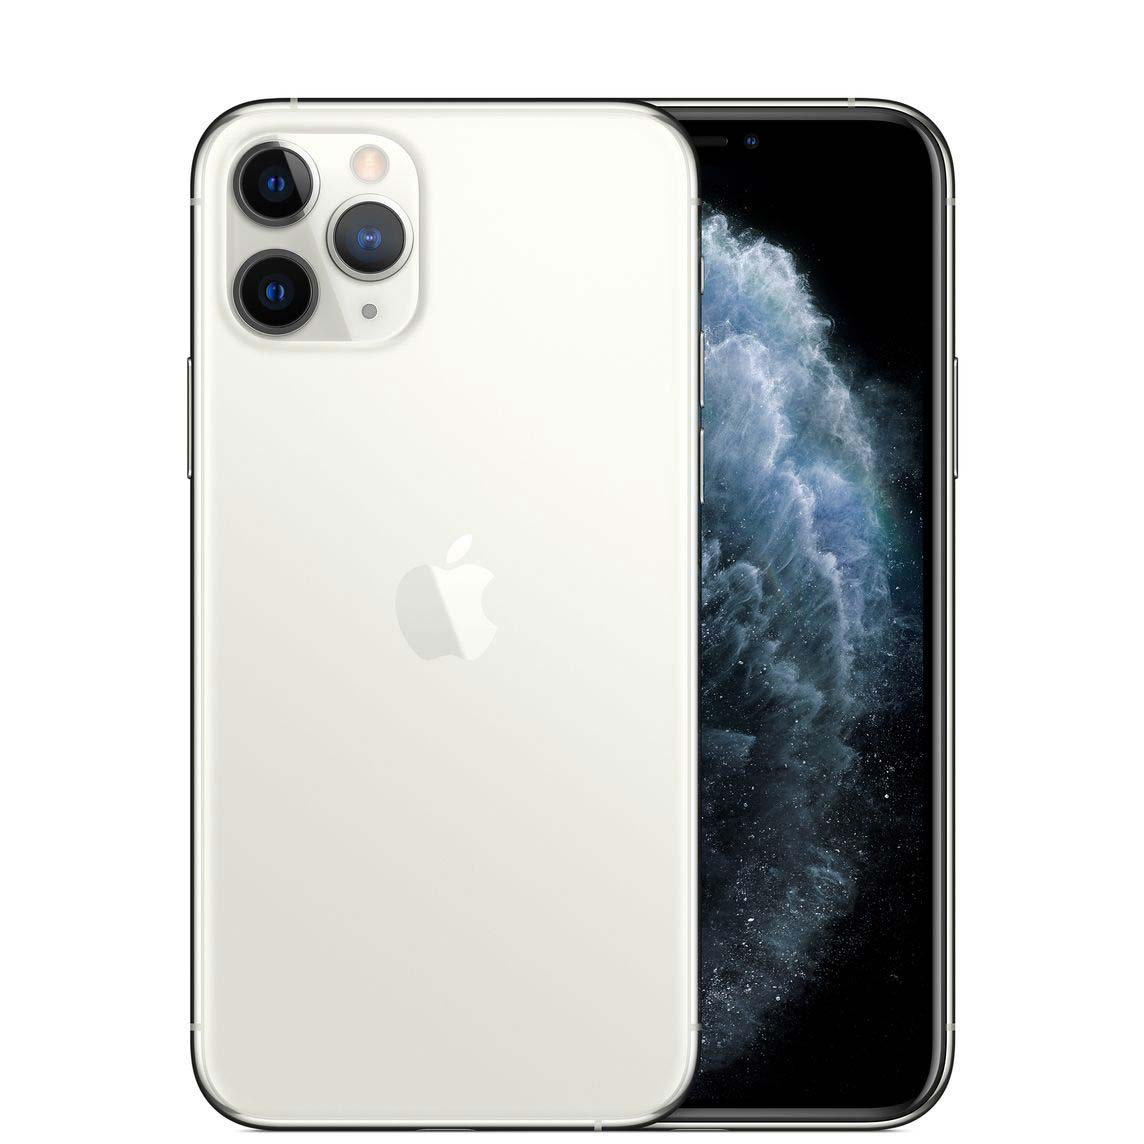 Apple iPhone 11 Pro Image & Specs